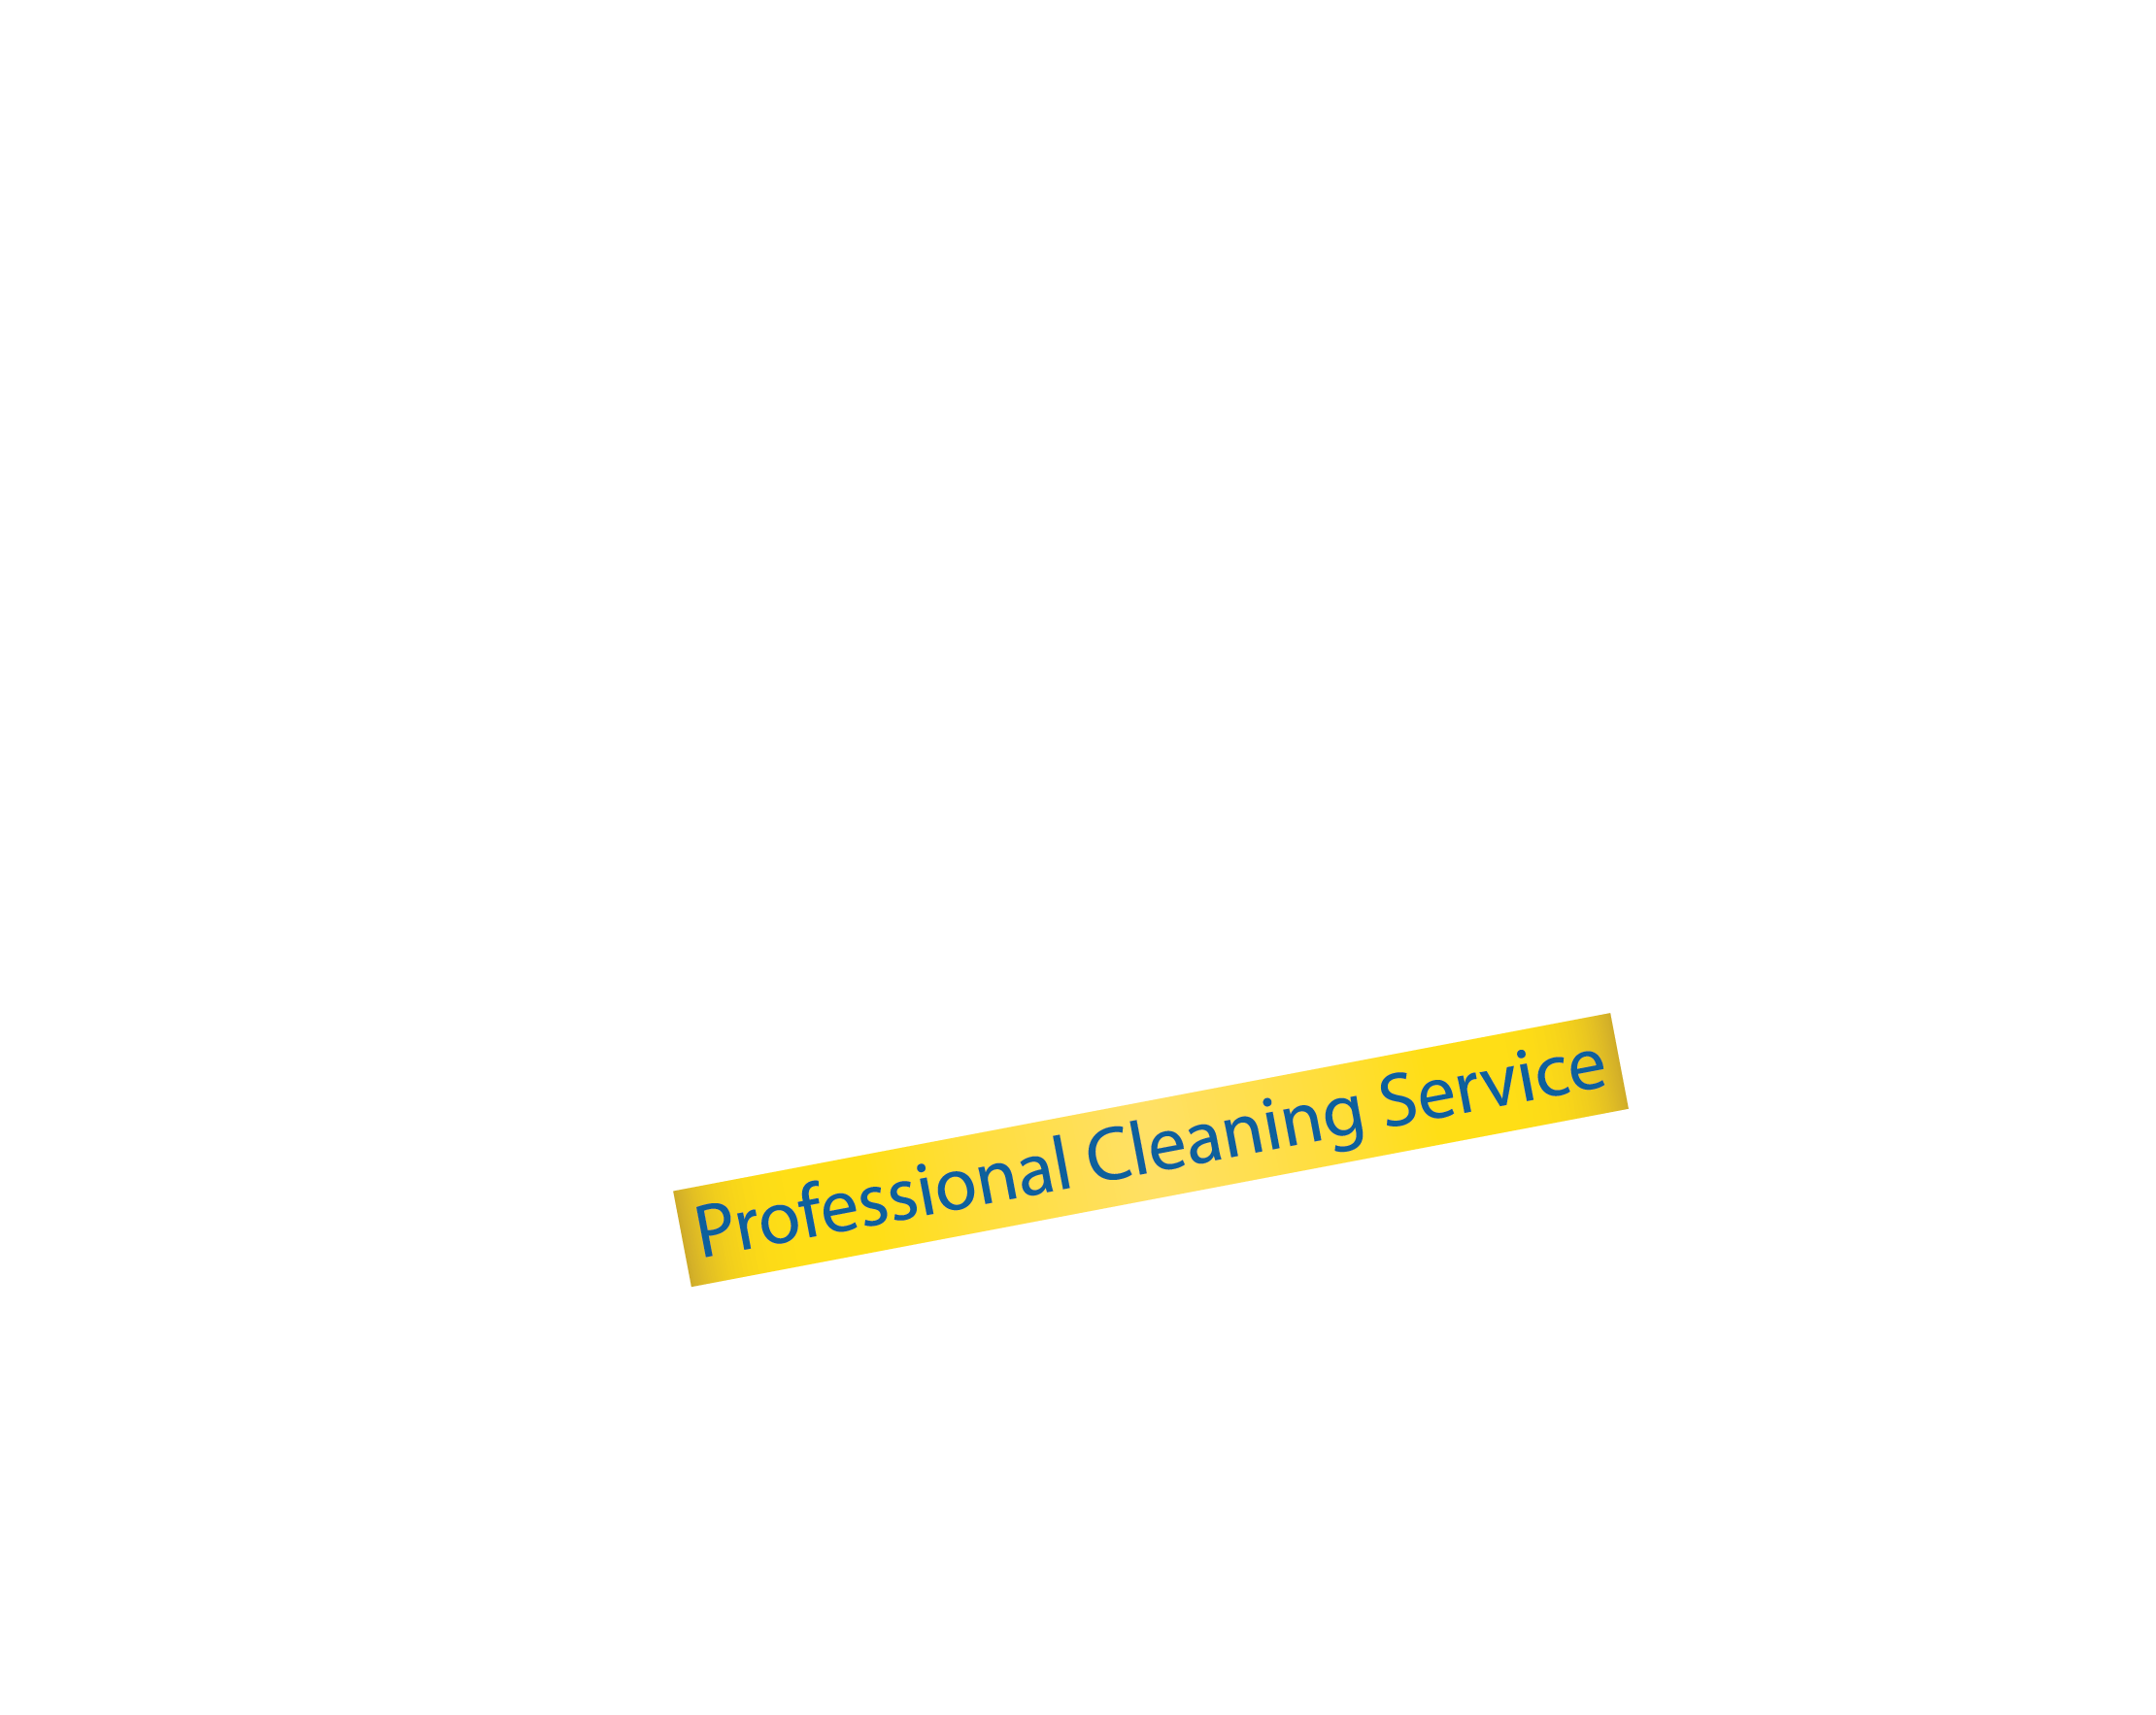 Sparklean